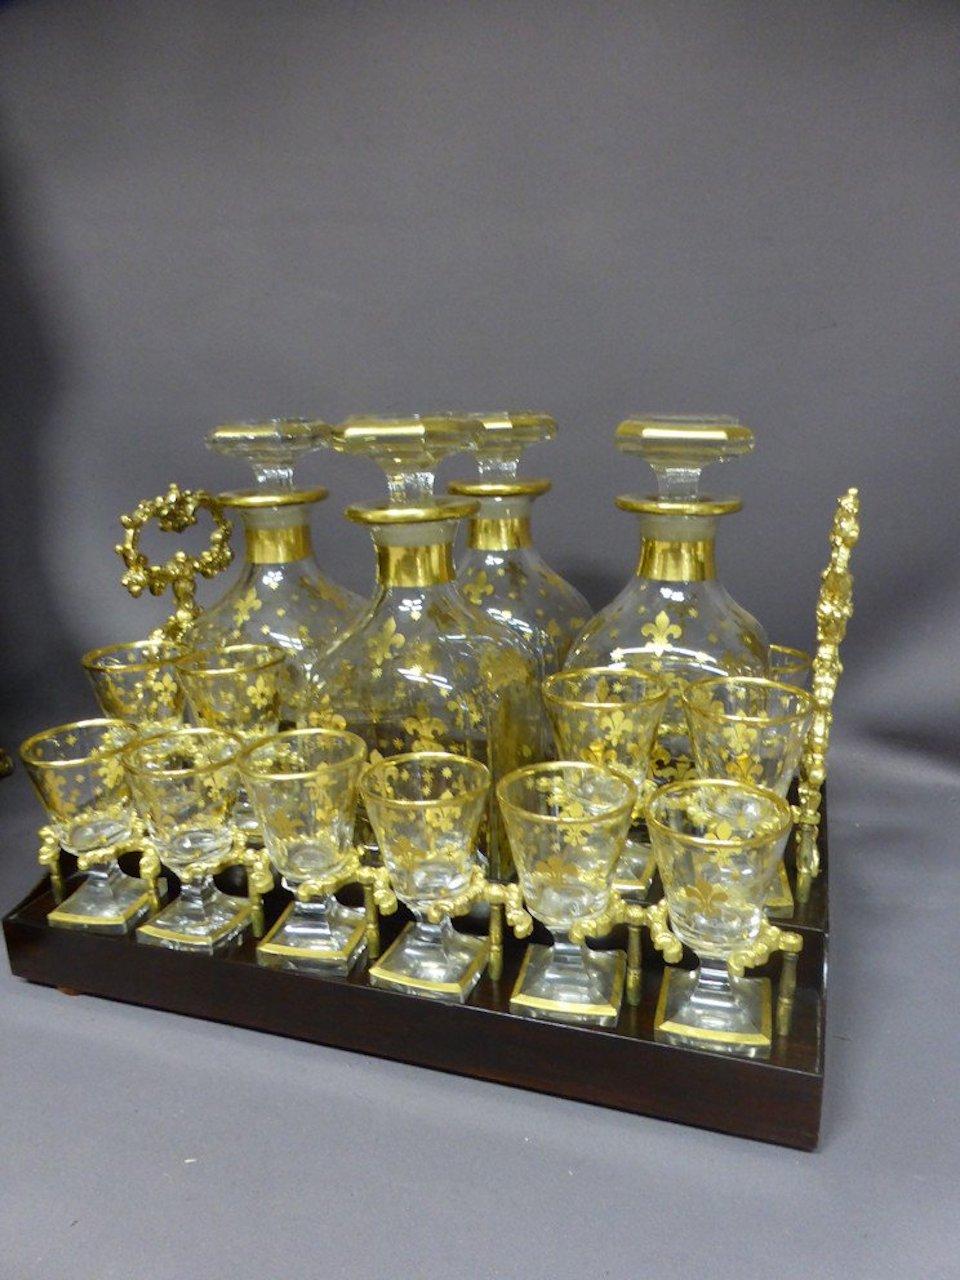 Belle cave à liqueurs en bois noirci d'époque Napoléon III comprenant un panier amovible avec trois carafes et douze verres dorés assortis décorés à l'or fin.
La boîte a un couvercle incurvé décoré d'un cartouche en son centre sur un entourage de